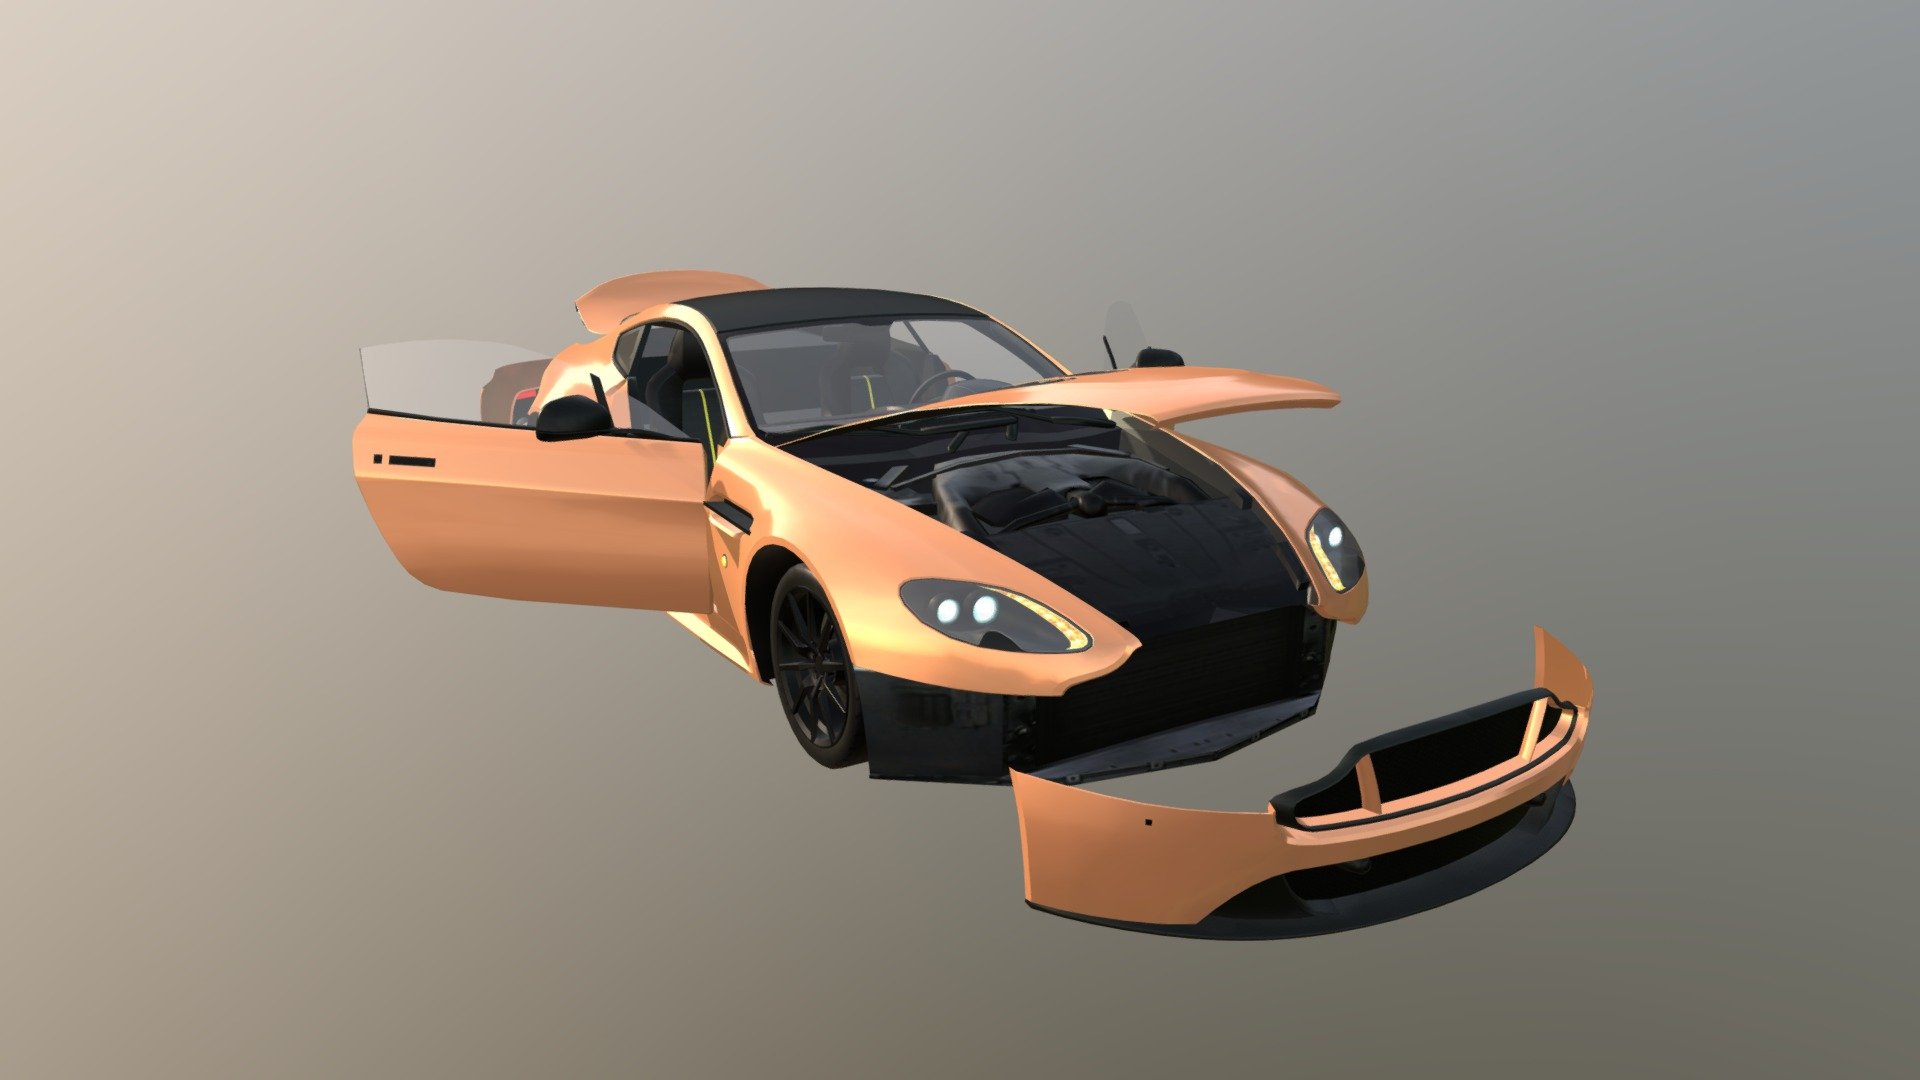 Real Car 14 Separated Parts - 3D model by Maker Games Studios (@MakerGamesStudios) 3d model